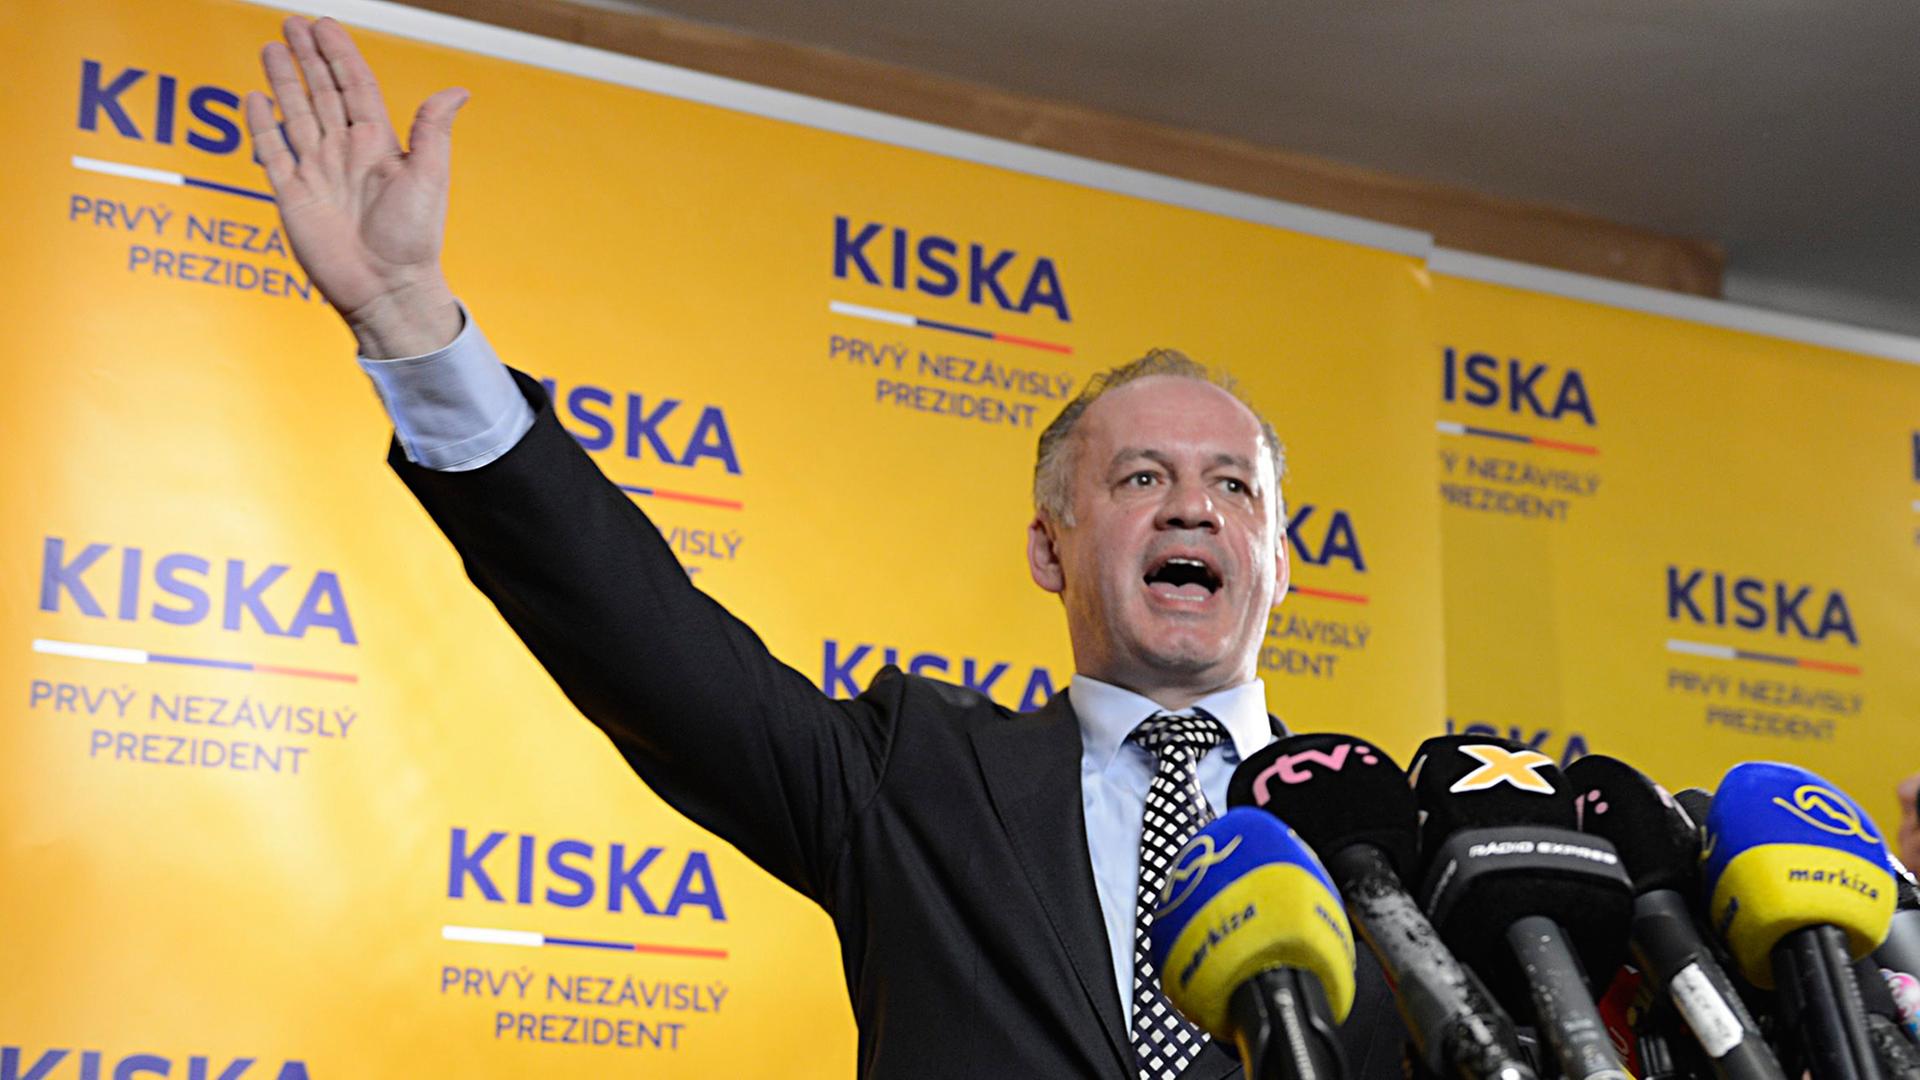 Andrej Kiska jubelt am Podium, vor Mikrofonen stehend, über seinen Wahlsieg.